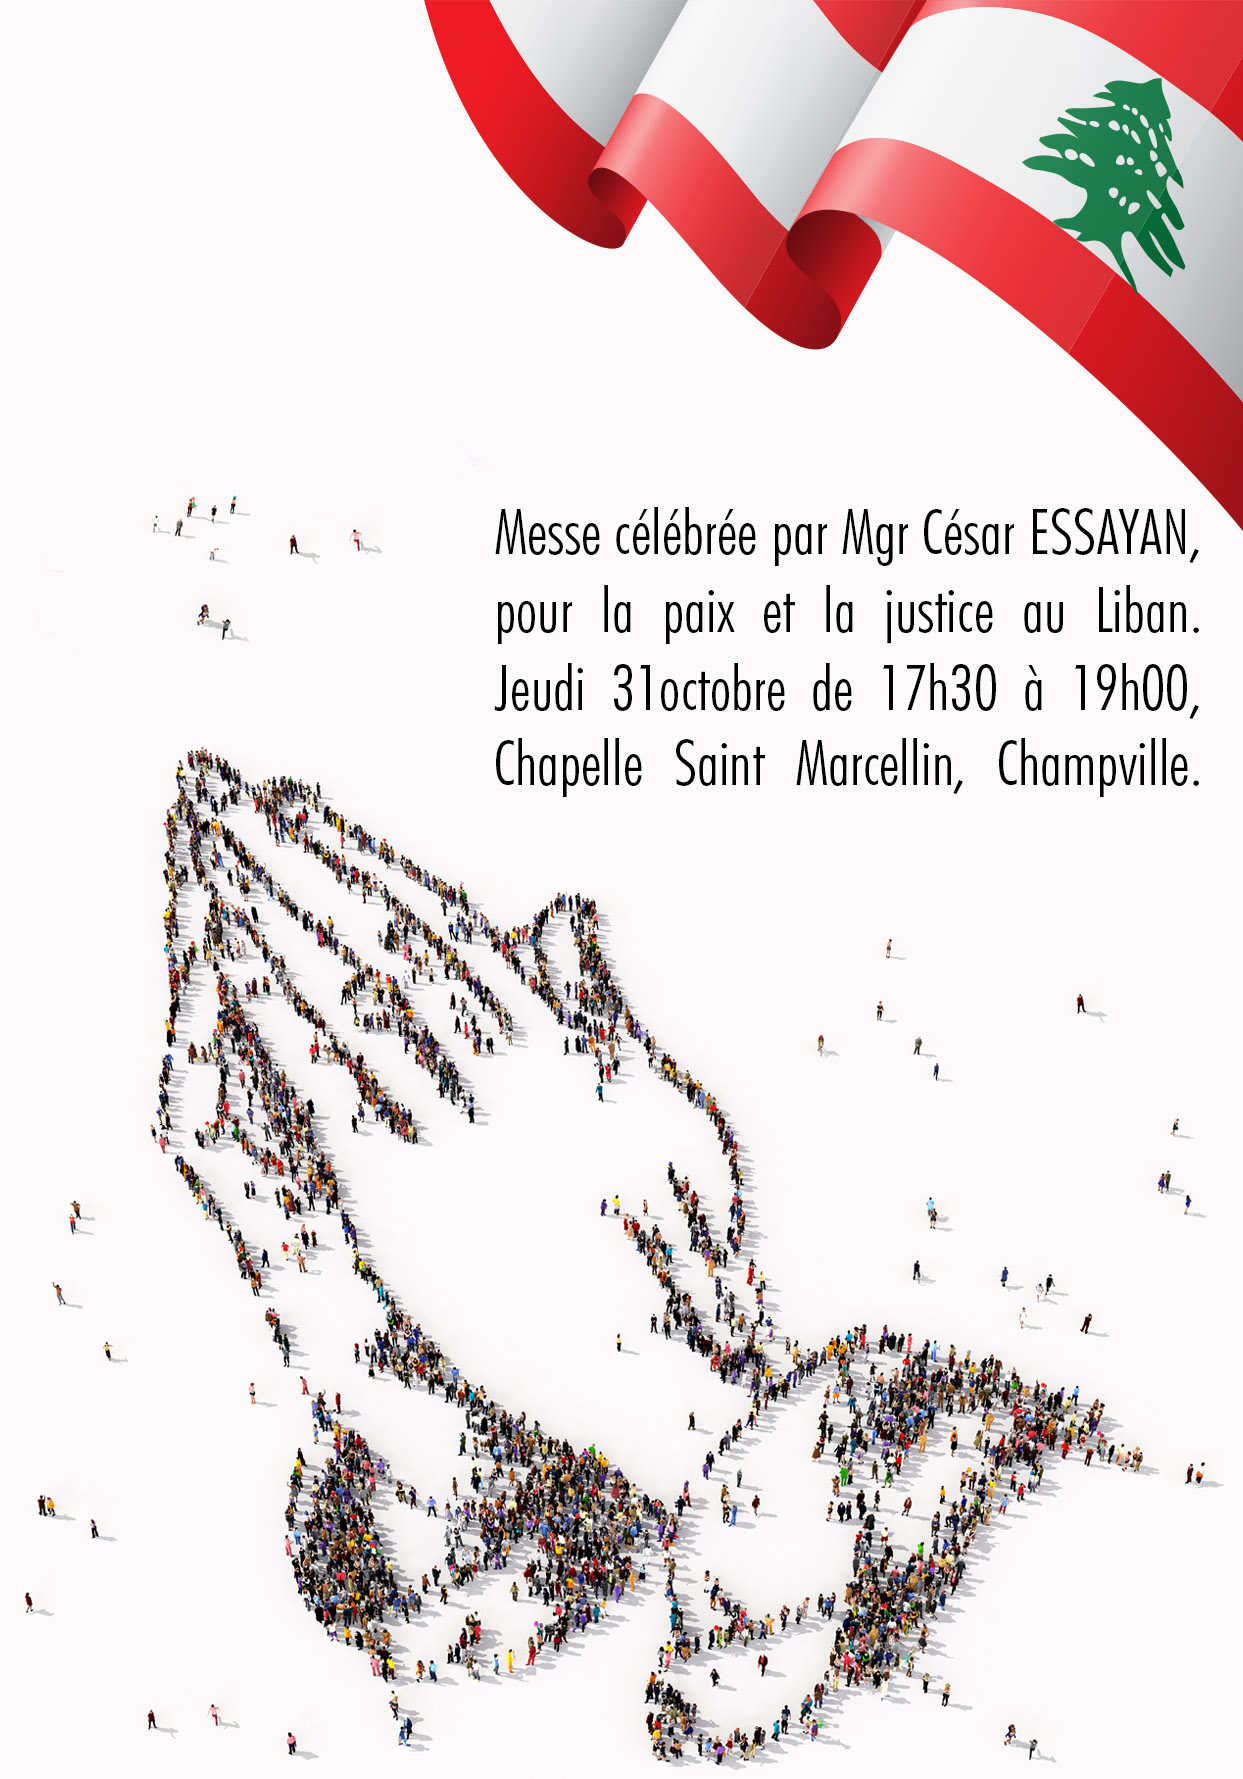 Messe célébrée par Mgr César ESSAYAN, pour la paix et la justice au Liban.